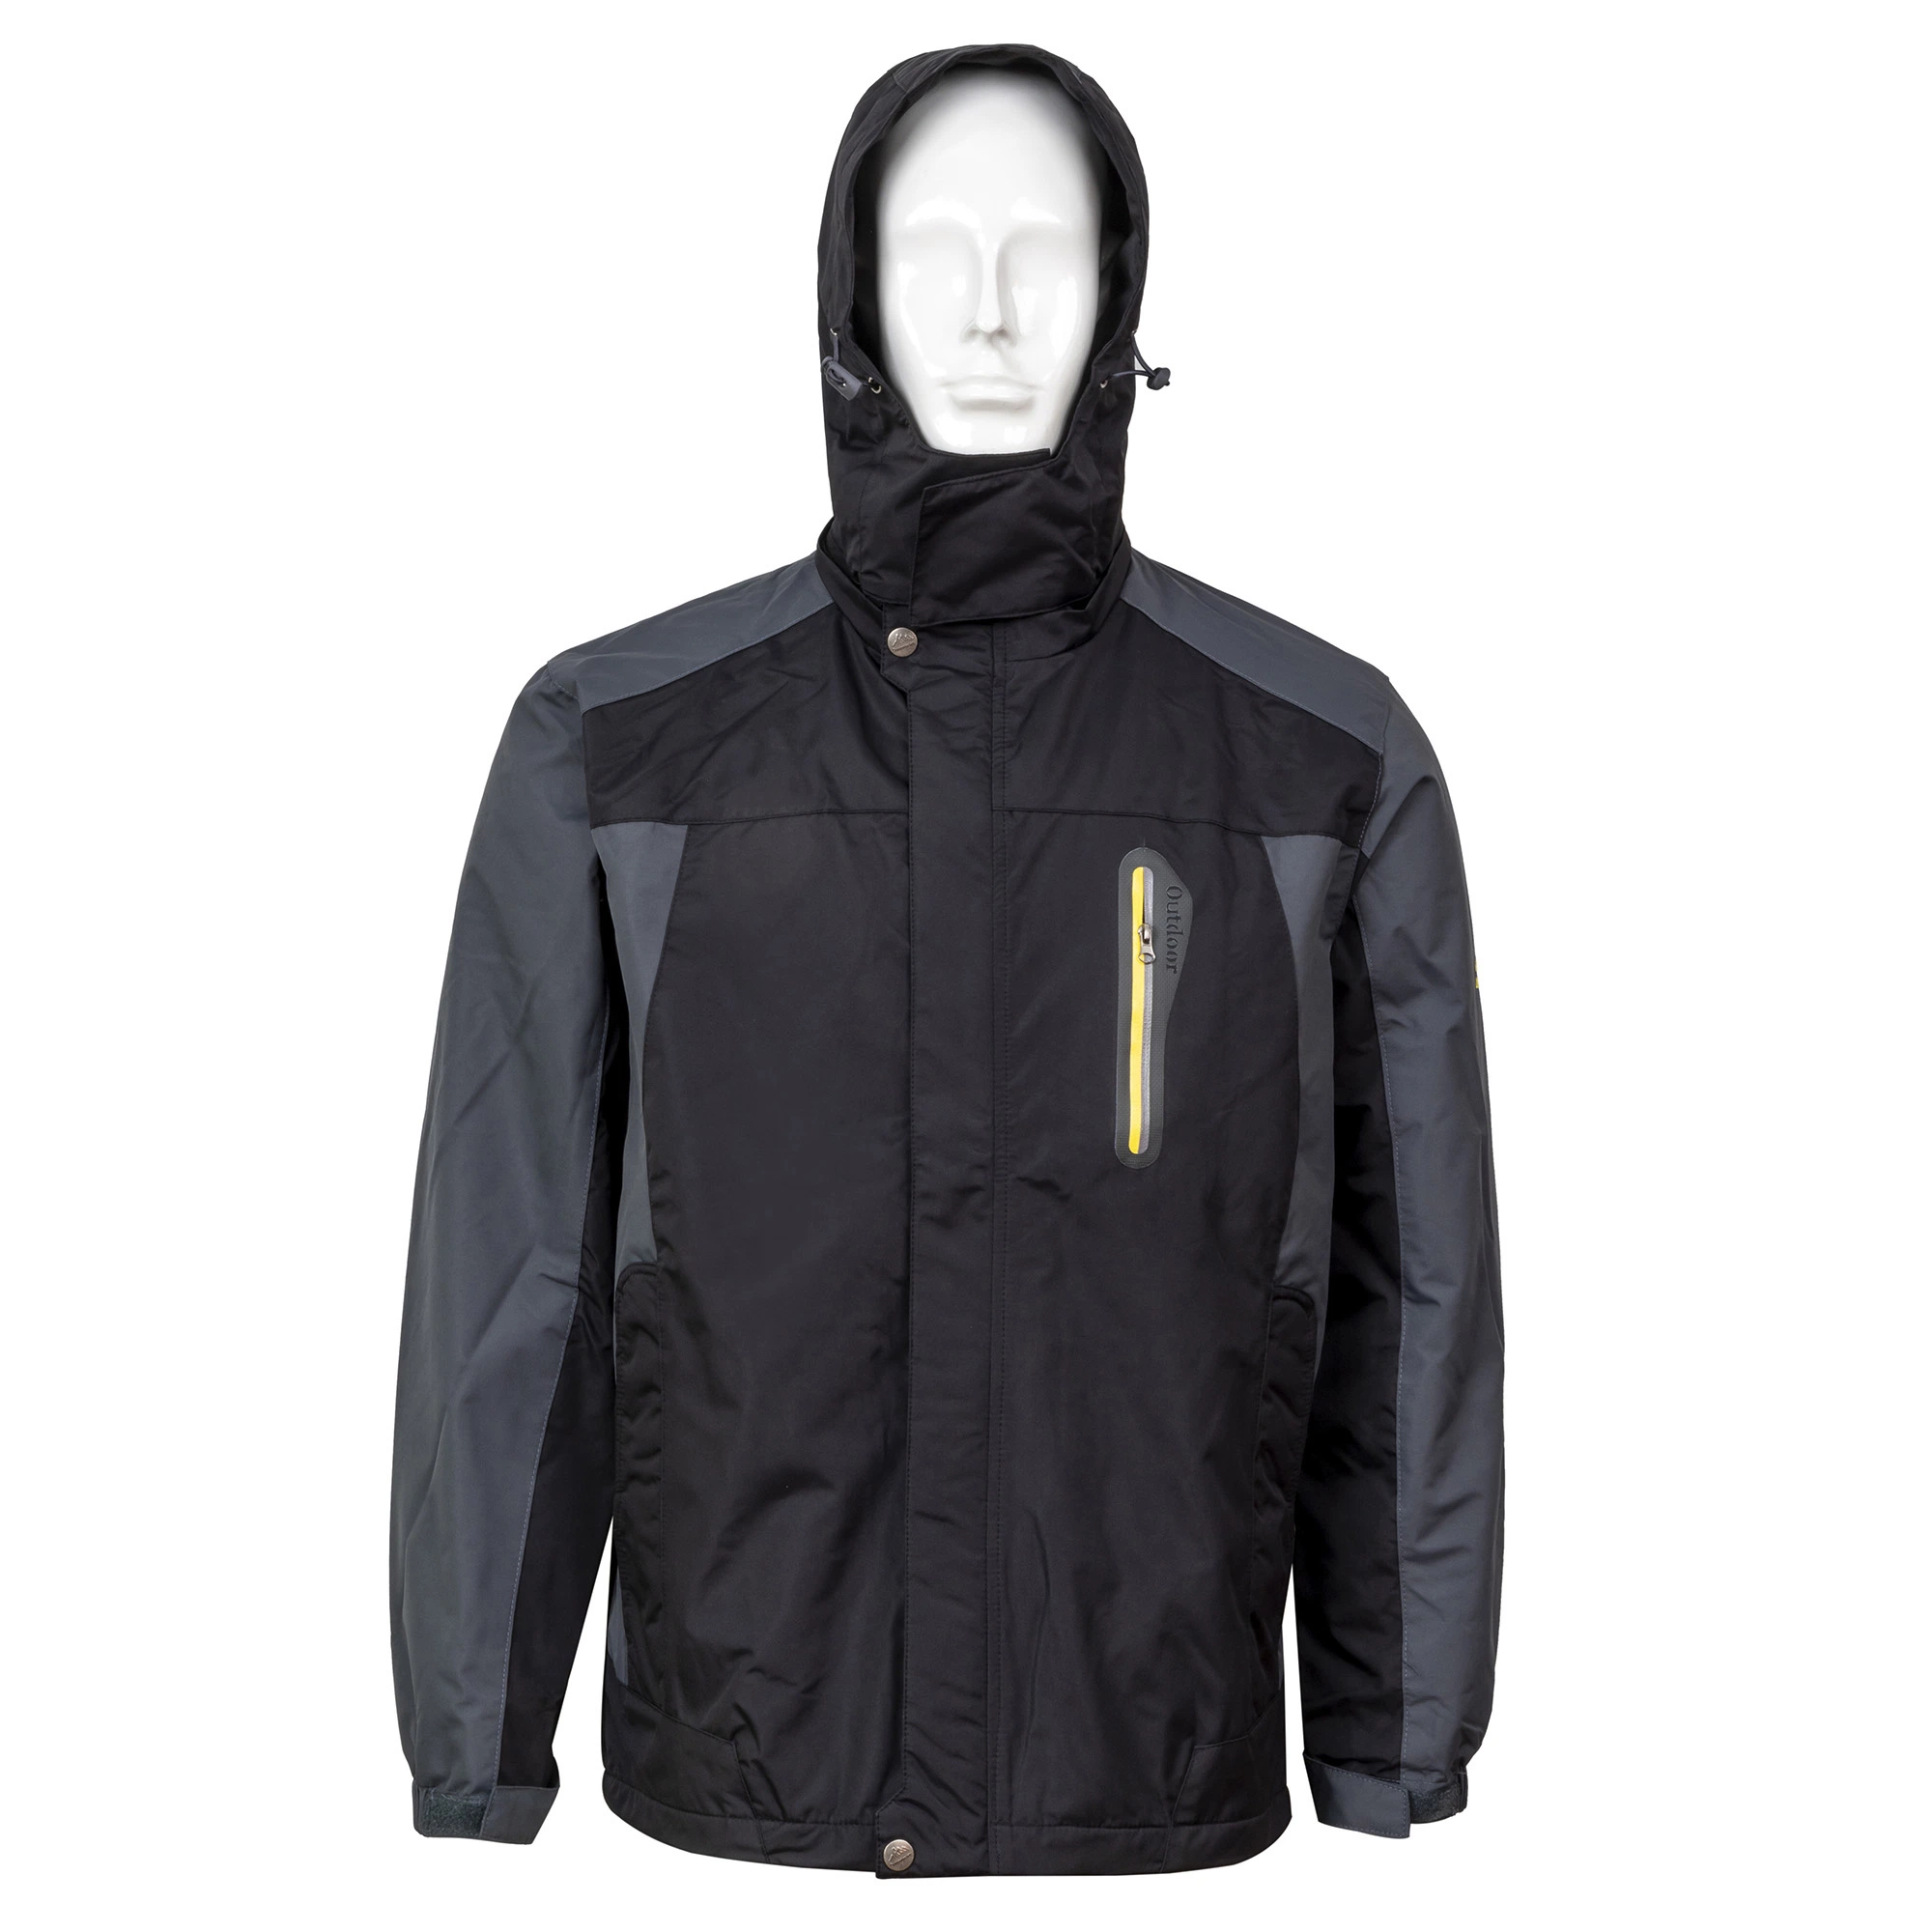 Men's Winter Jacket Waterproof Windproof Ski Wear